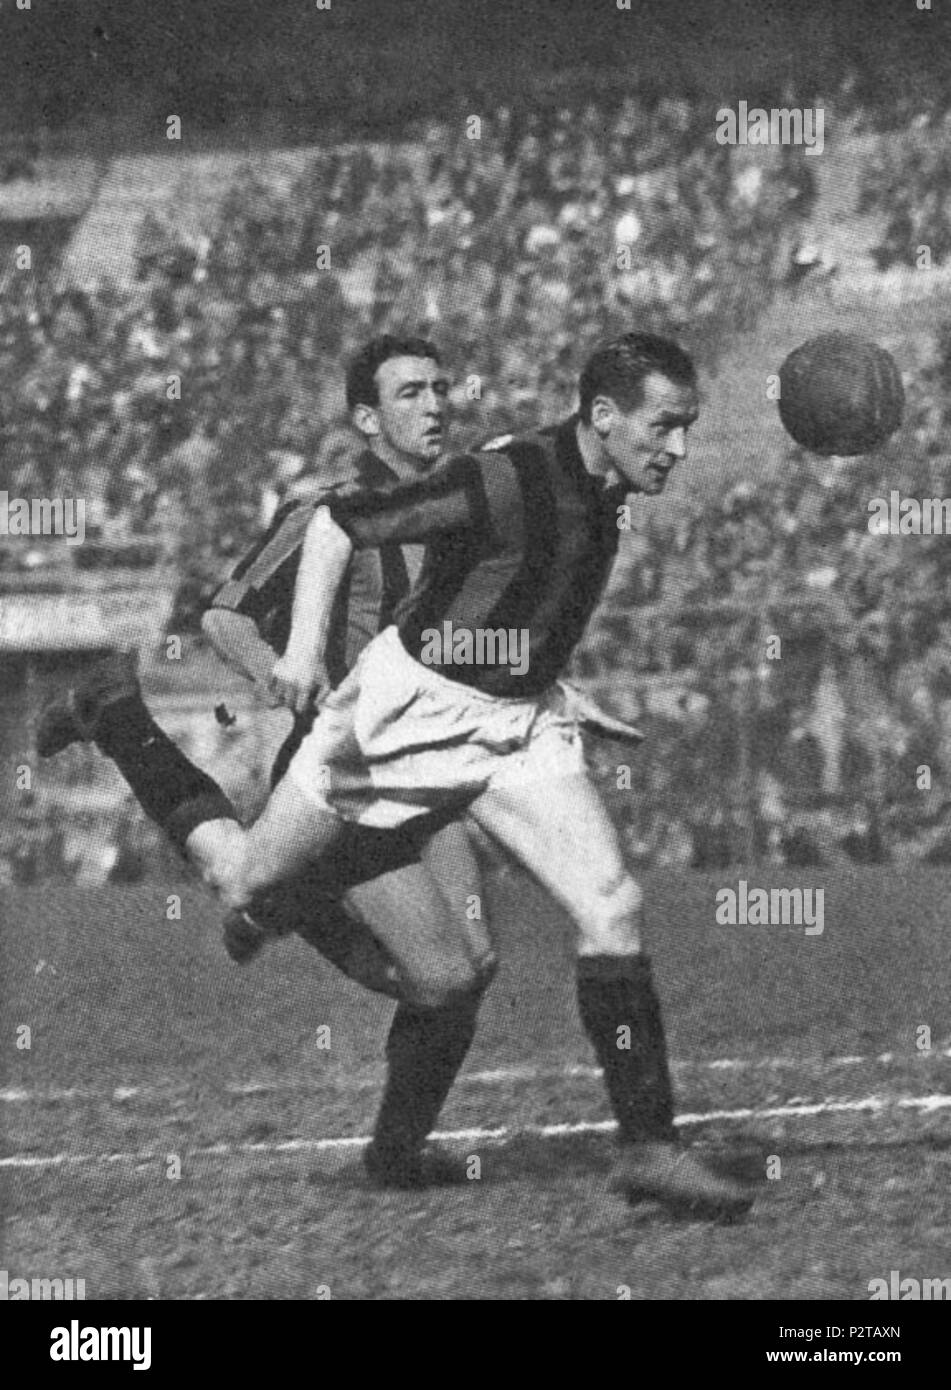 . Italiano: Il calciatore svedese Nils Liedholm en azione al Milán. Entre 1949 y 1961. Desconocida 3 AC Milán - Nils Liedholm Foto de stock